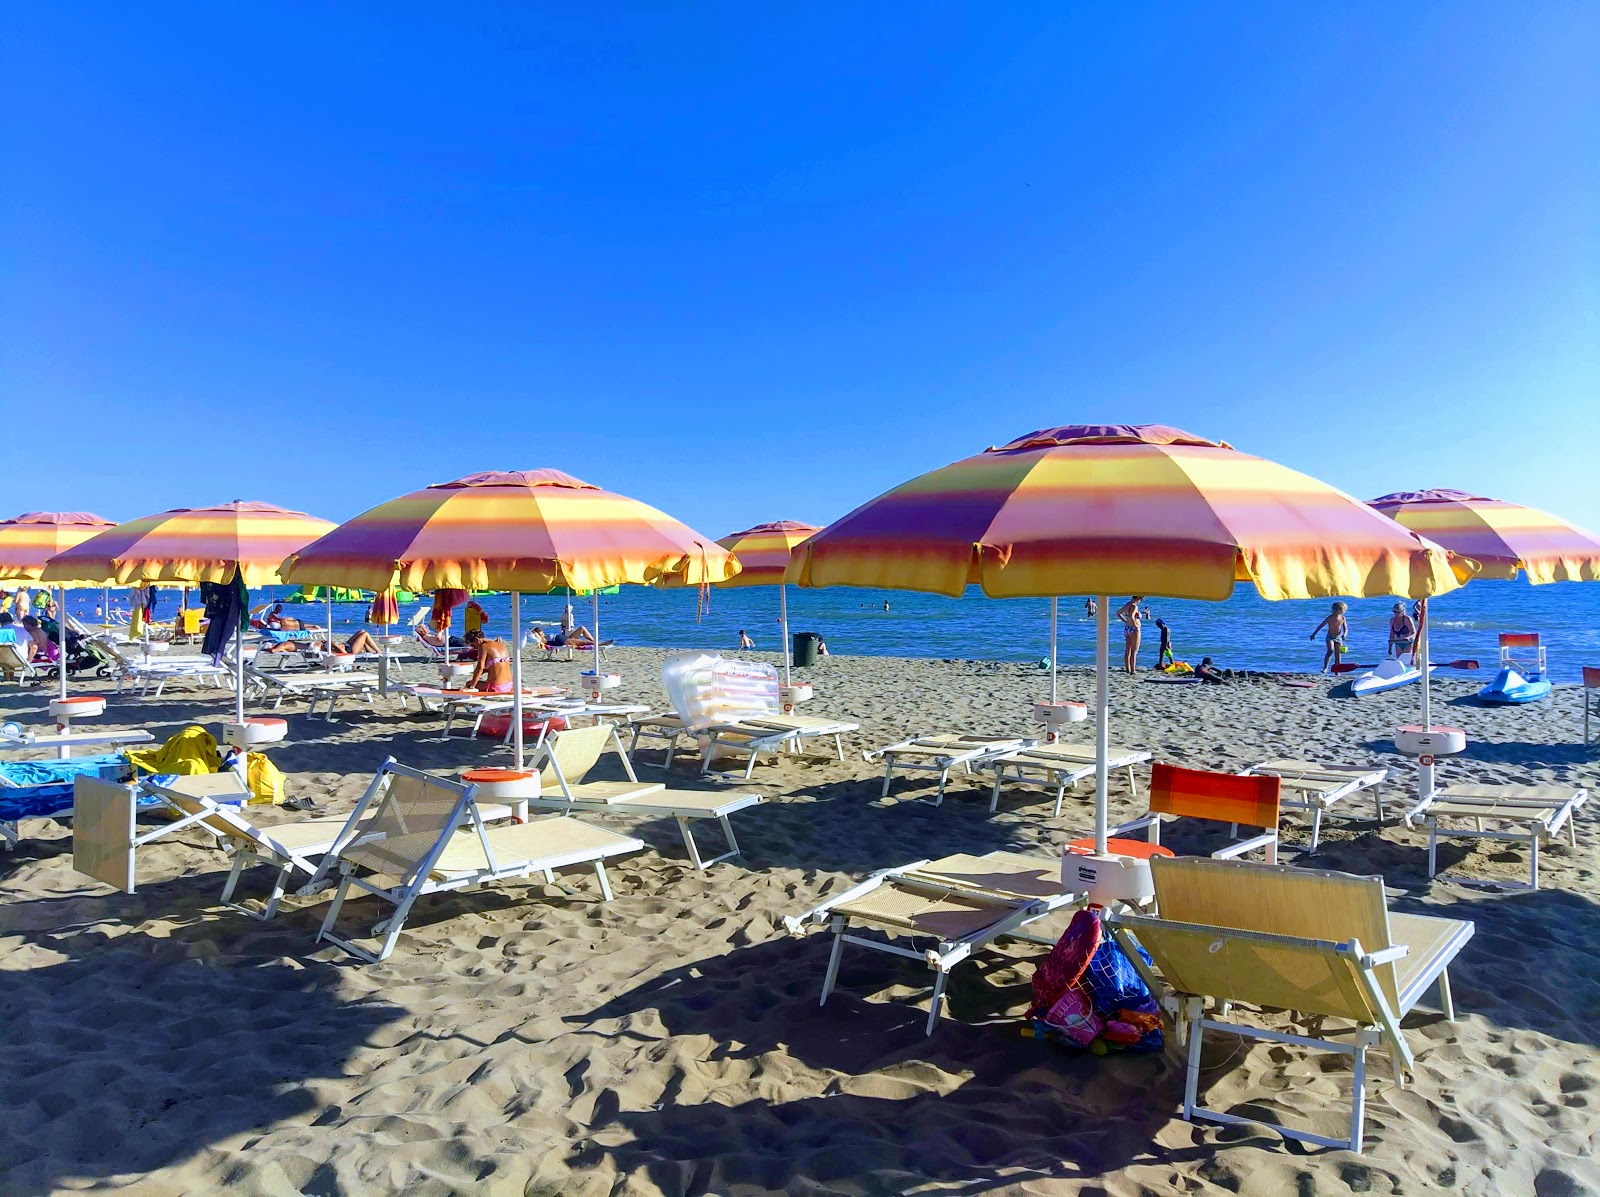 Spiaggia Marina di Grosseto'in fotoğrafı - Çocuklu aile gezginleri için önerilir